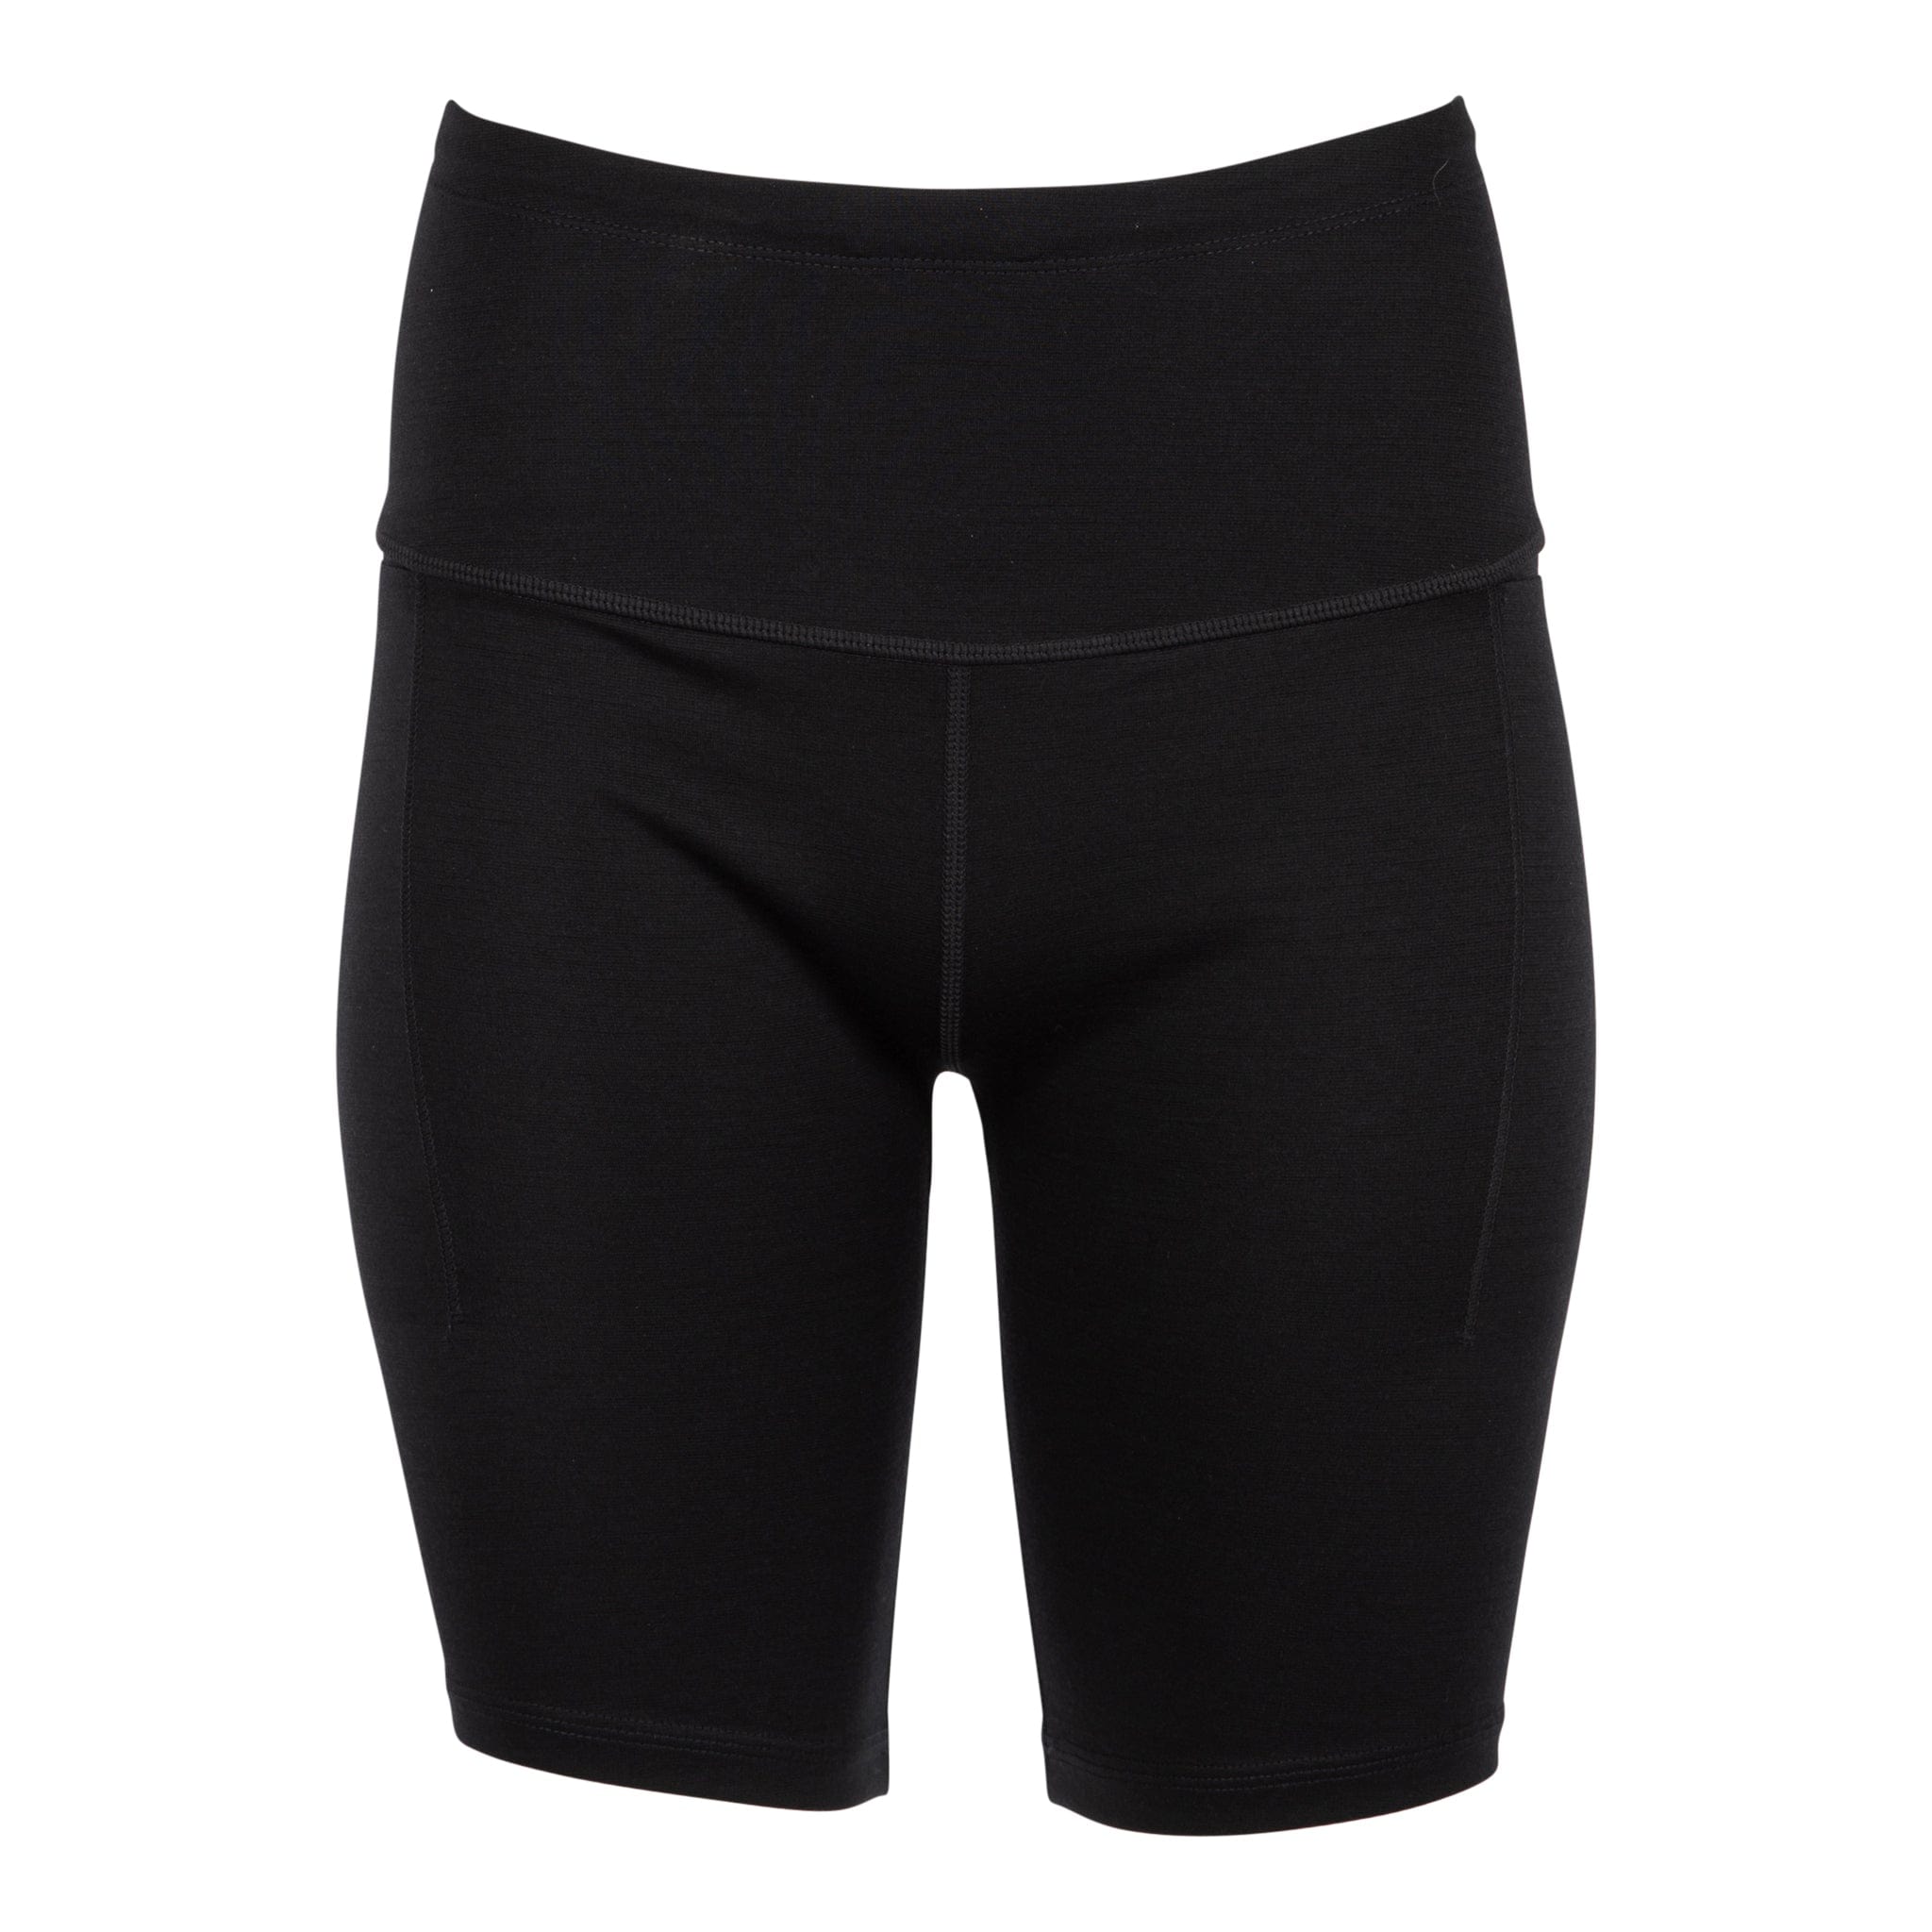 Iva Bell Women's Merino Bike Shorts with Pockets | Ridge Merino